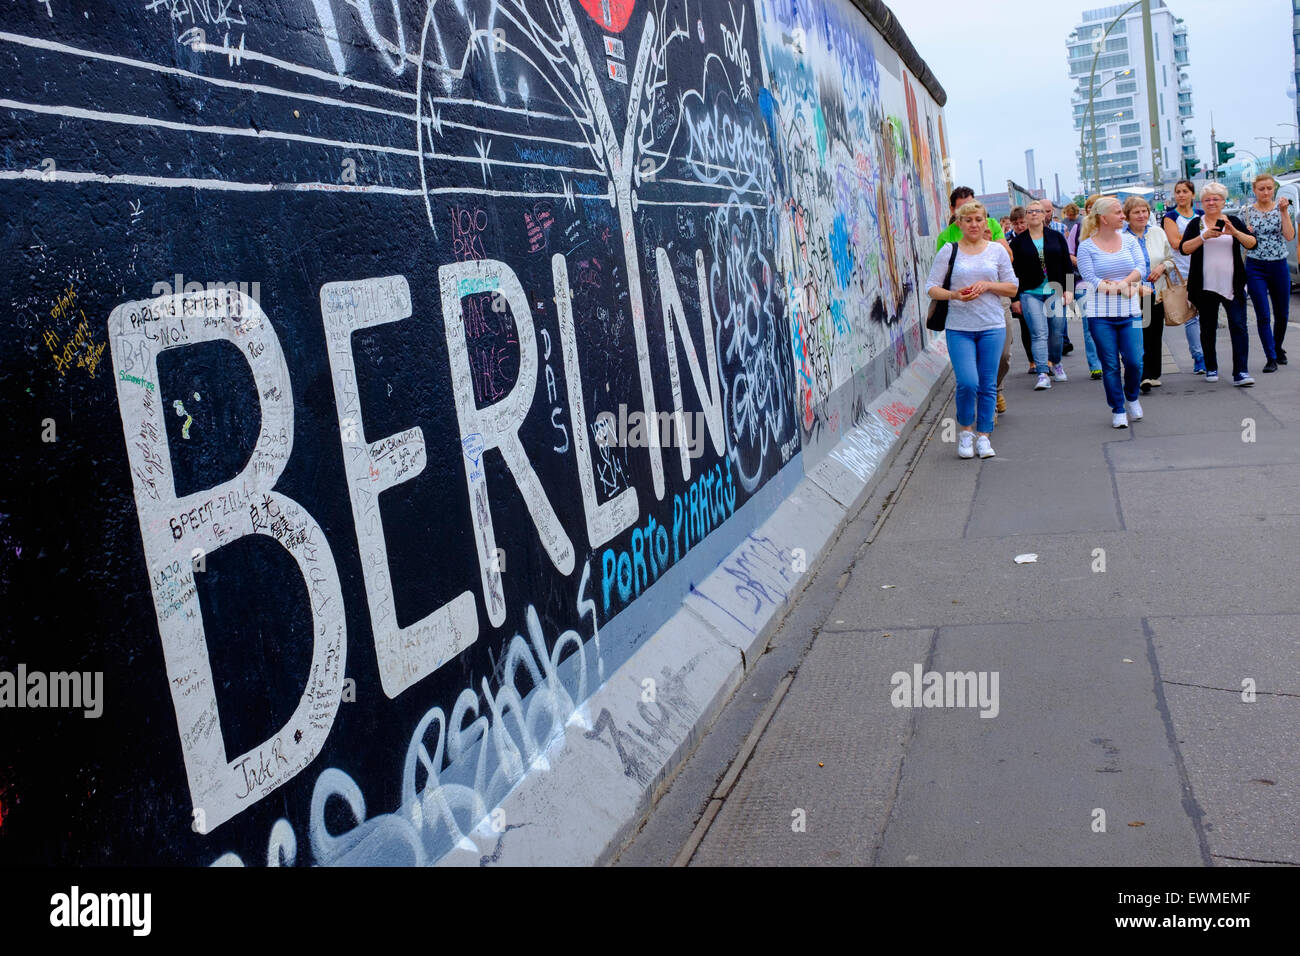 Los turistas atravesar el Muro de Berlín la sección restante en East Side Gallery con muchas pinturas murales y graffiti en Friedrichshain Foto de stock